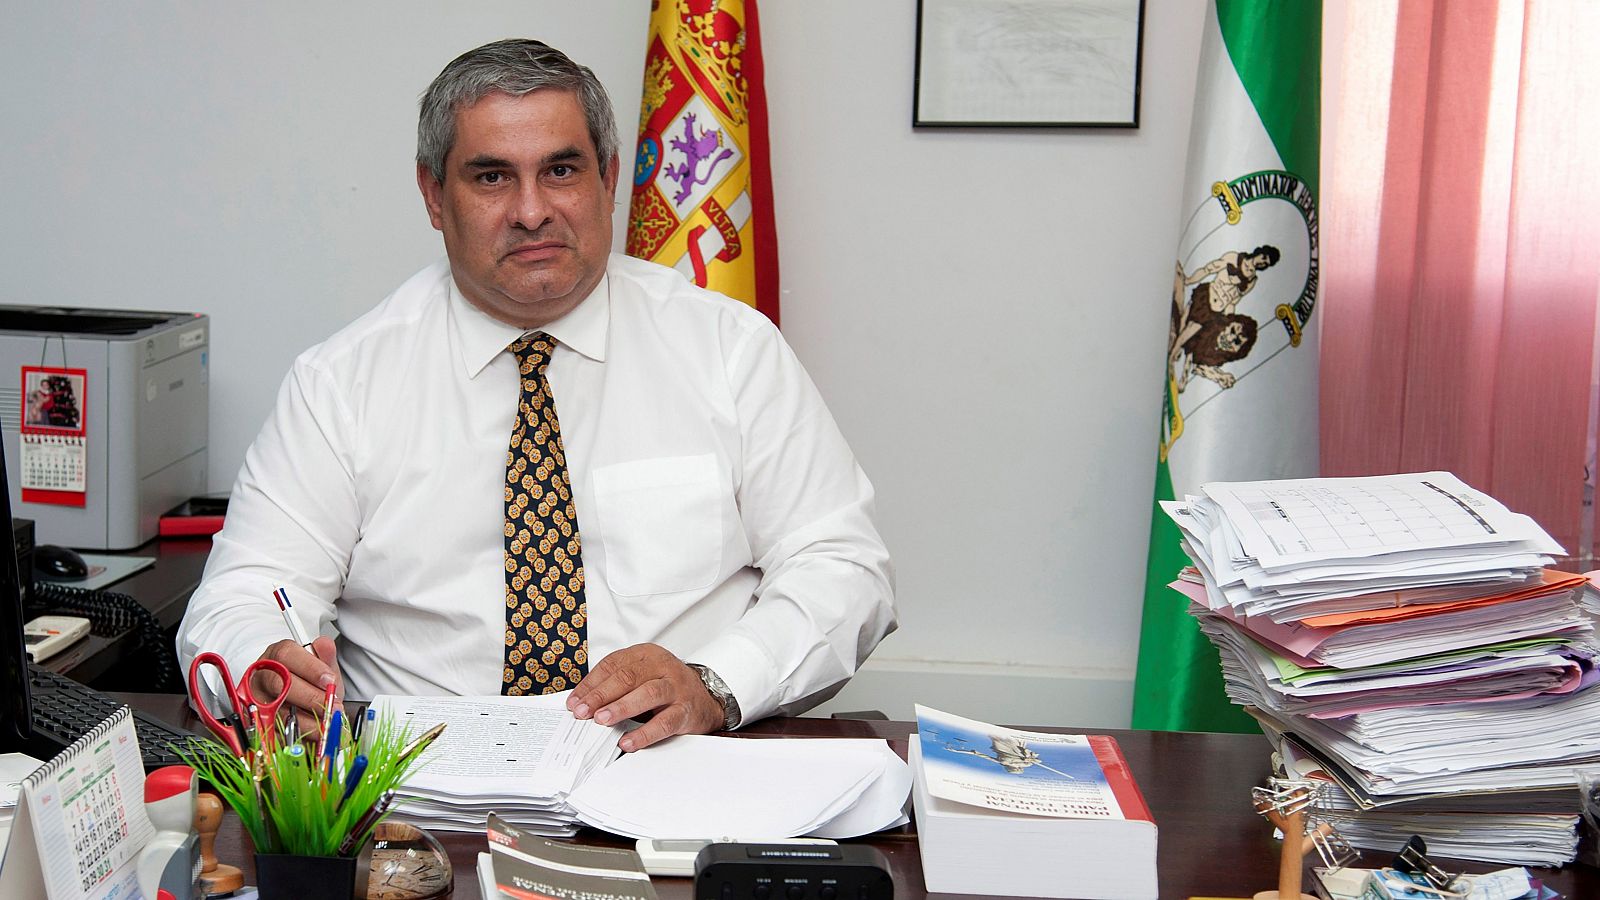 El fiscal jefe de Algeciras asegura que faltan "muchos medios" en la lucha contra el narcotráfico